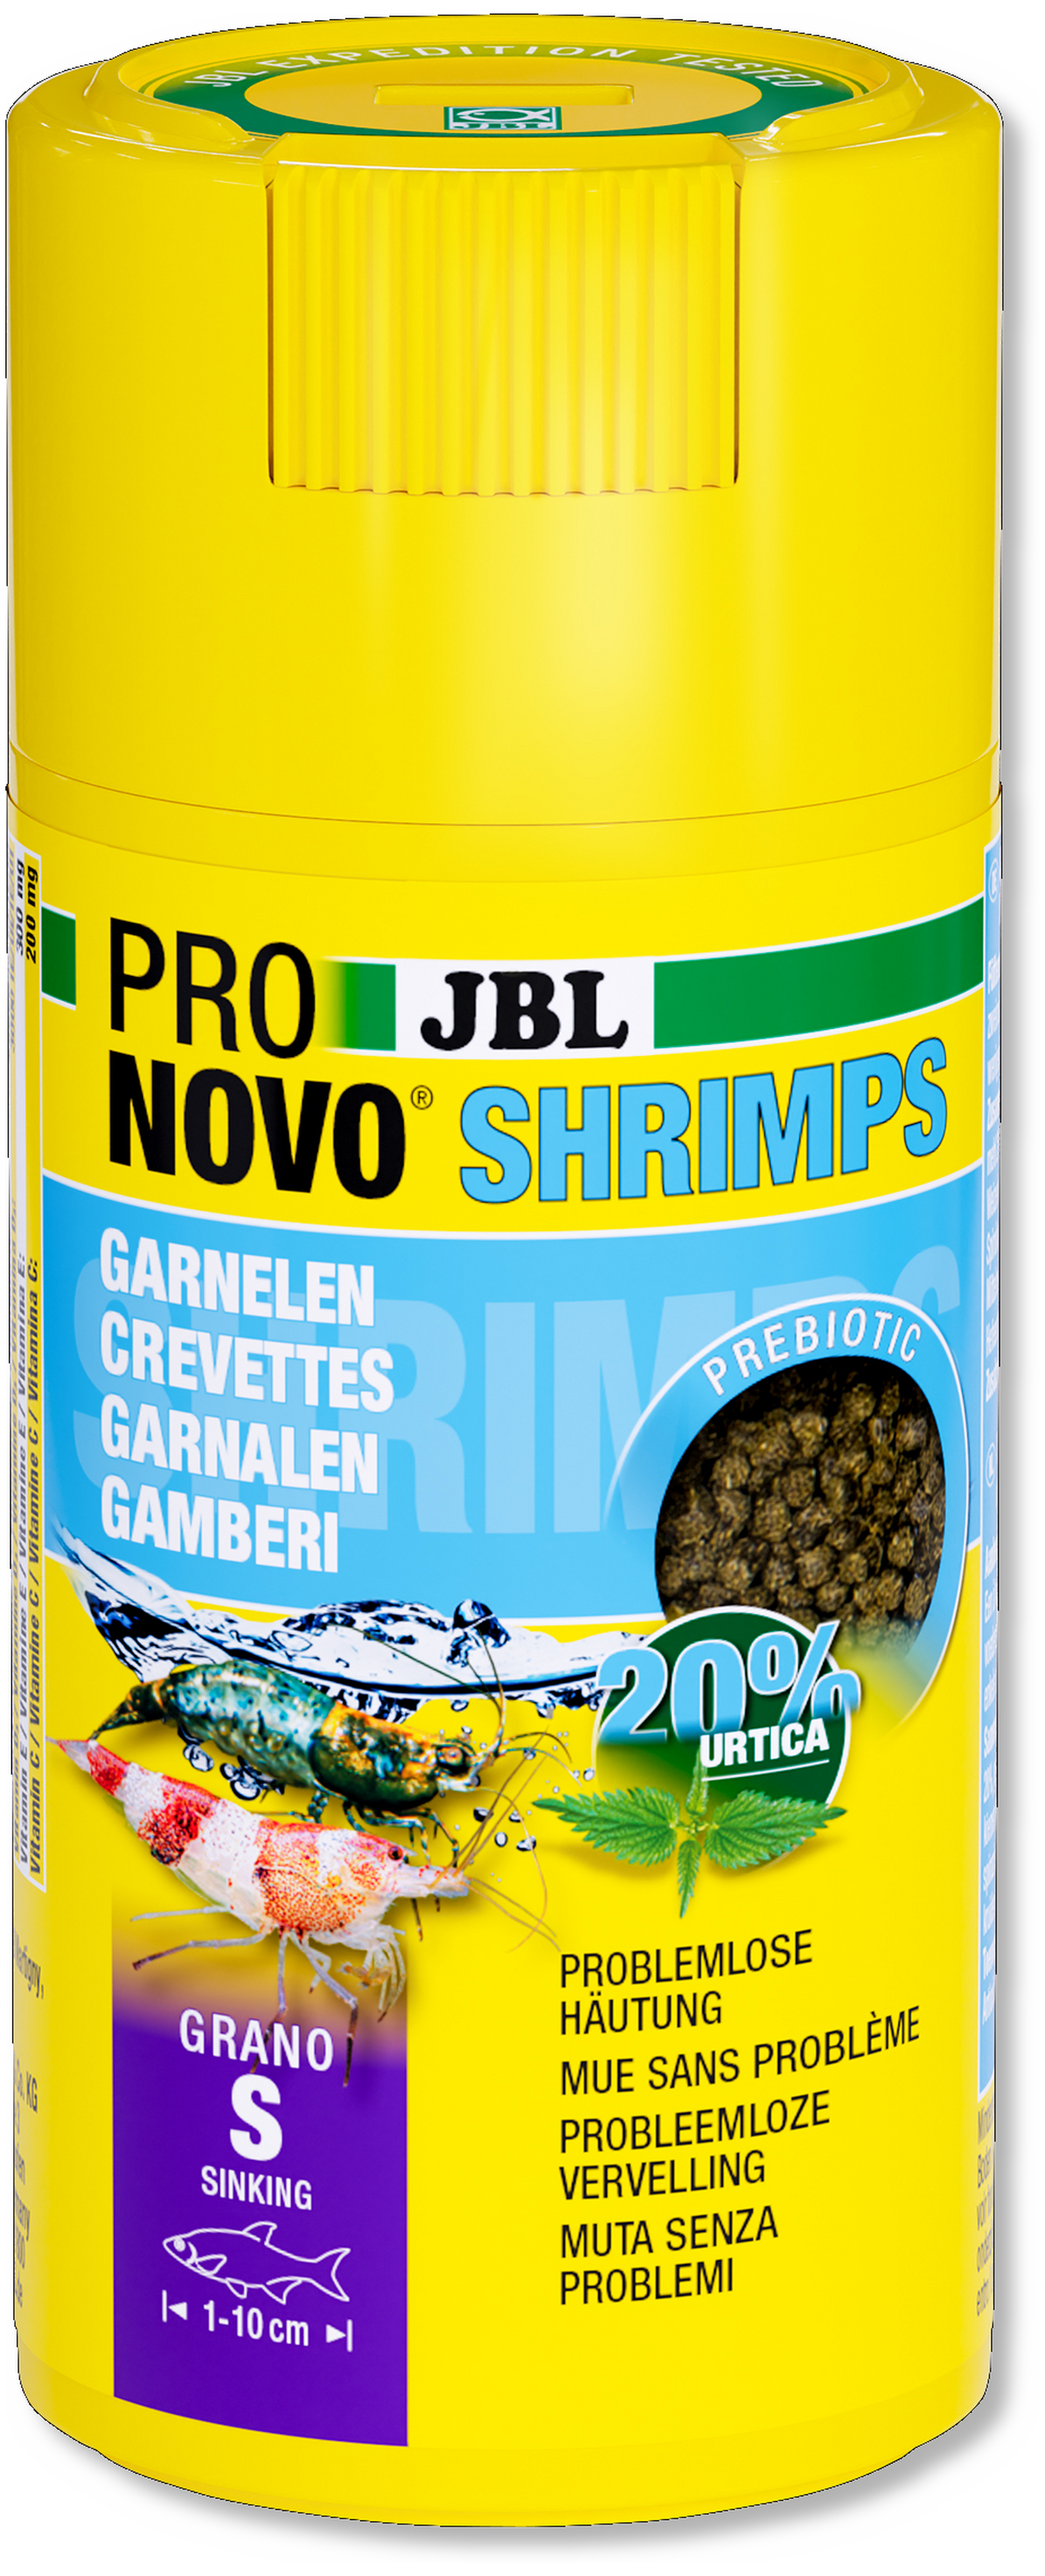 JBL ProNovo Shrimps Grano S 100ml Click